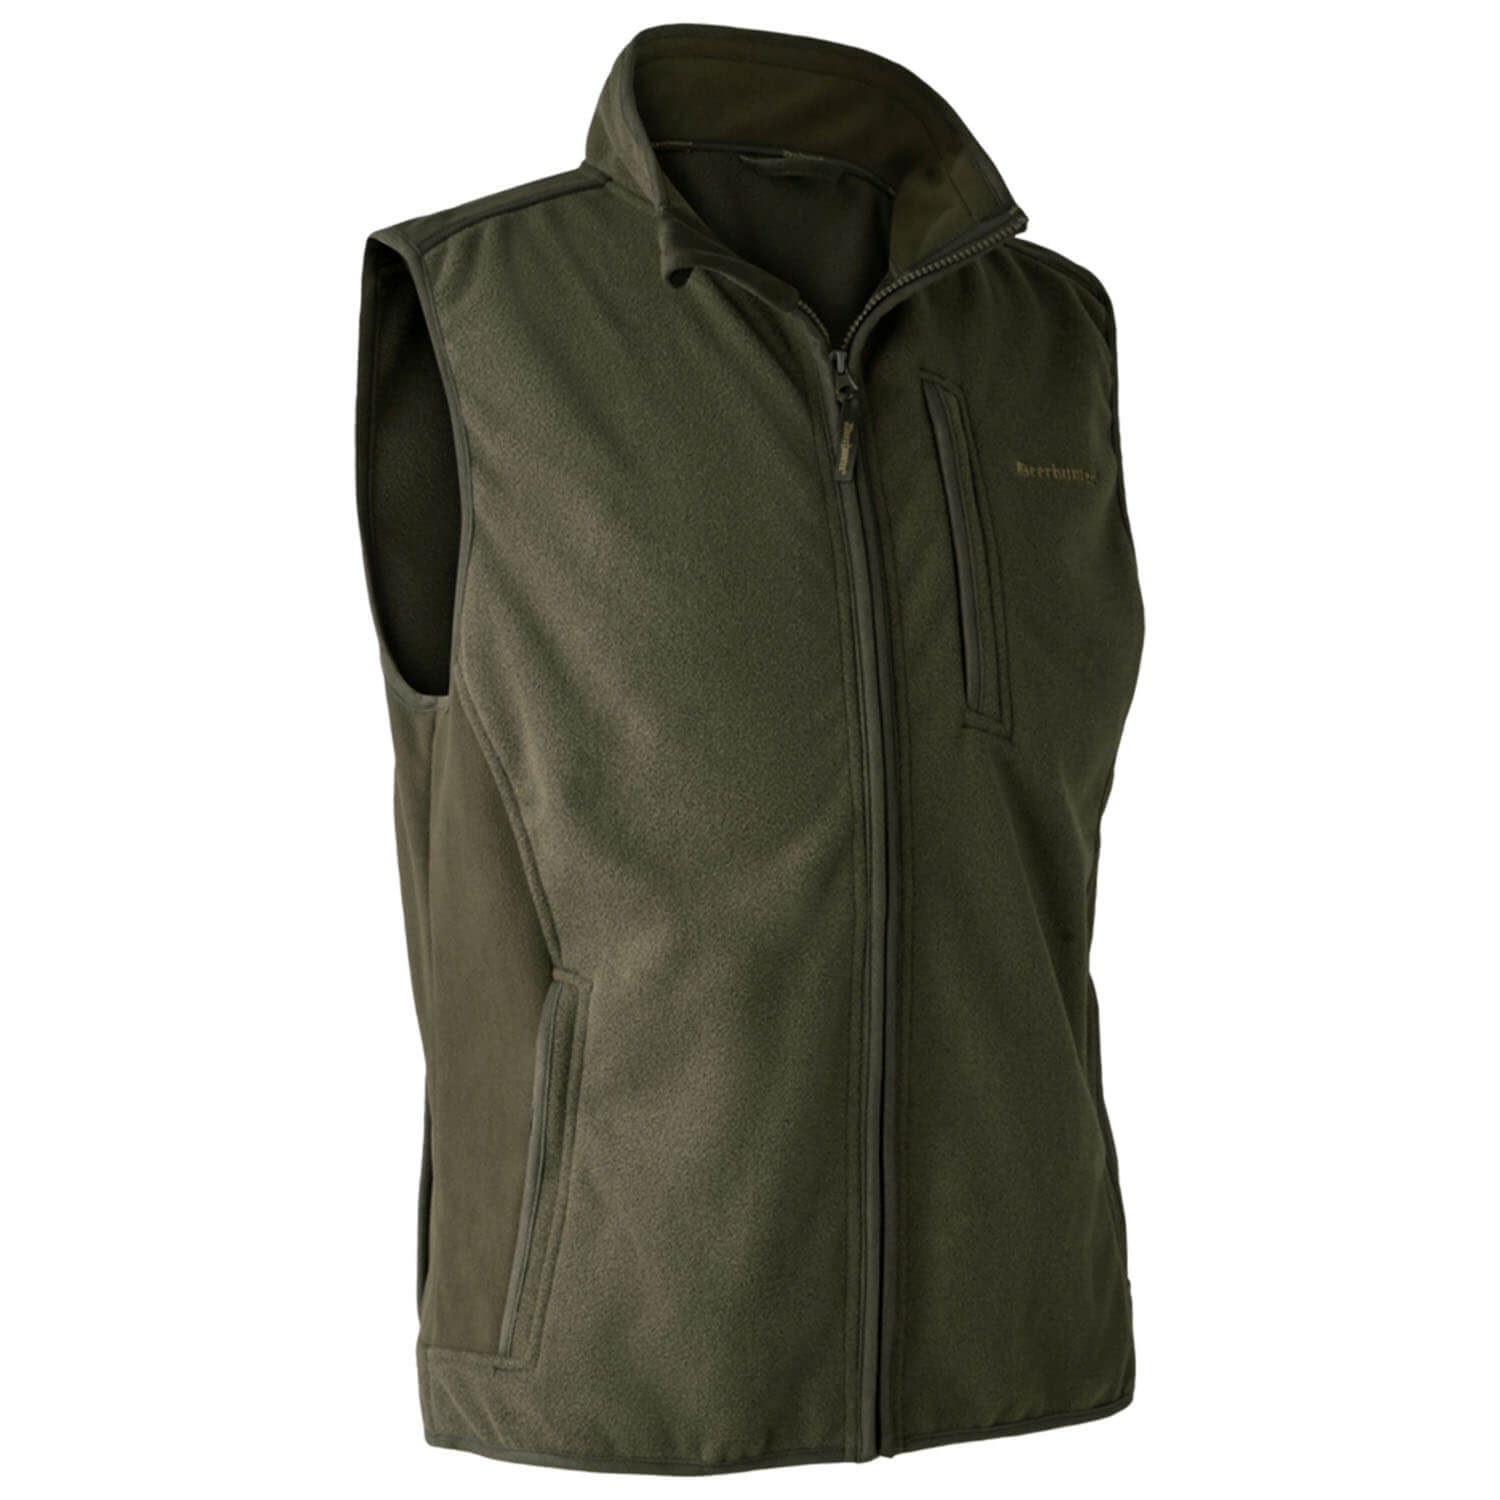  Deerhunter Gamekeeper Bonded fleece vest (groen) - Jachtvesten